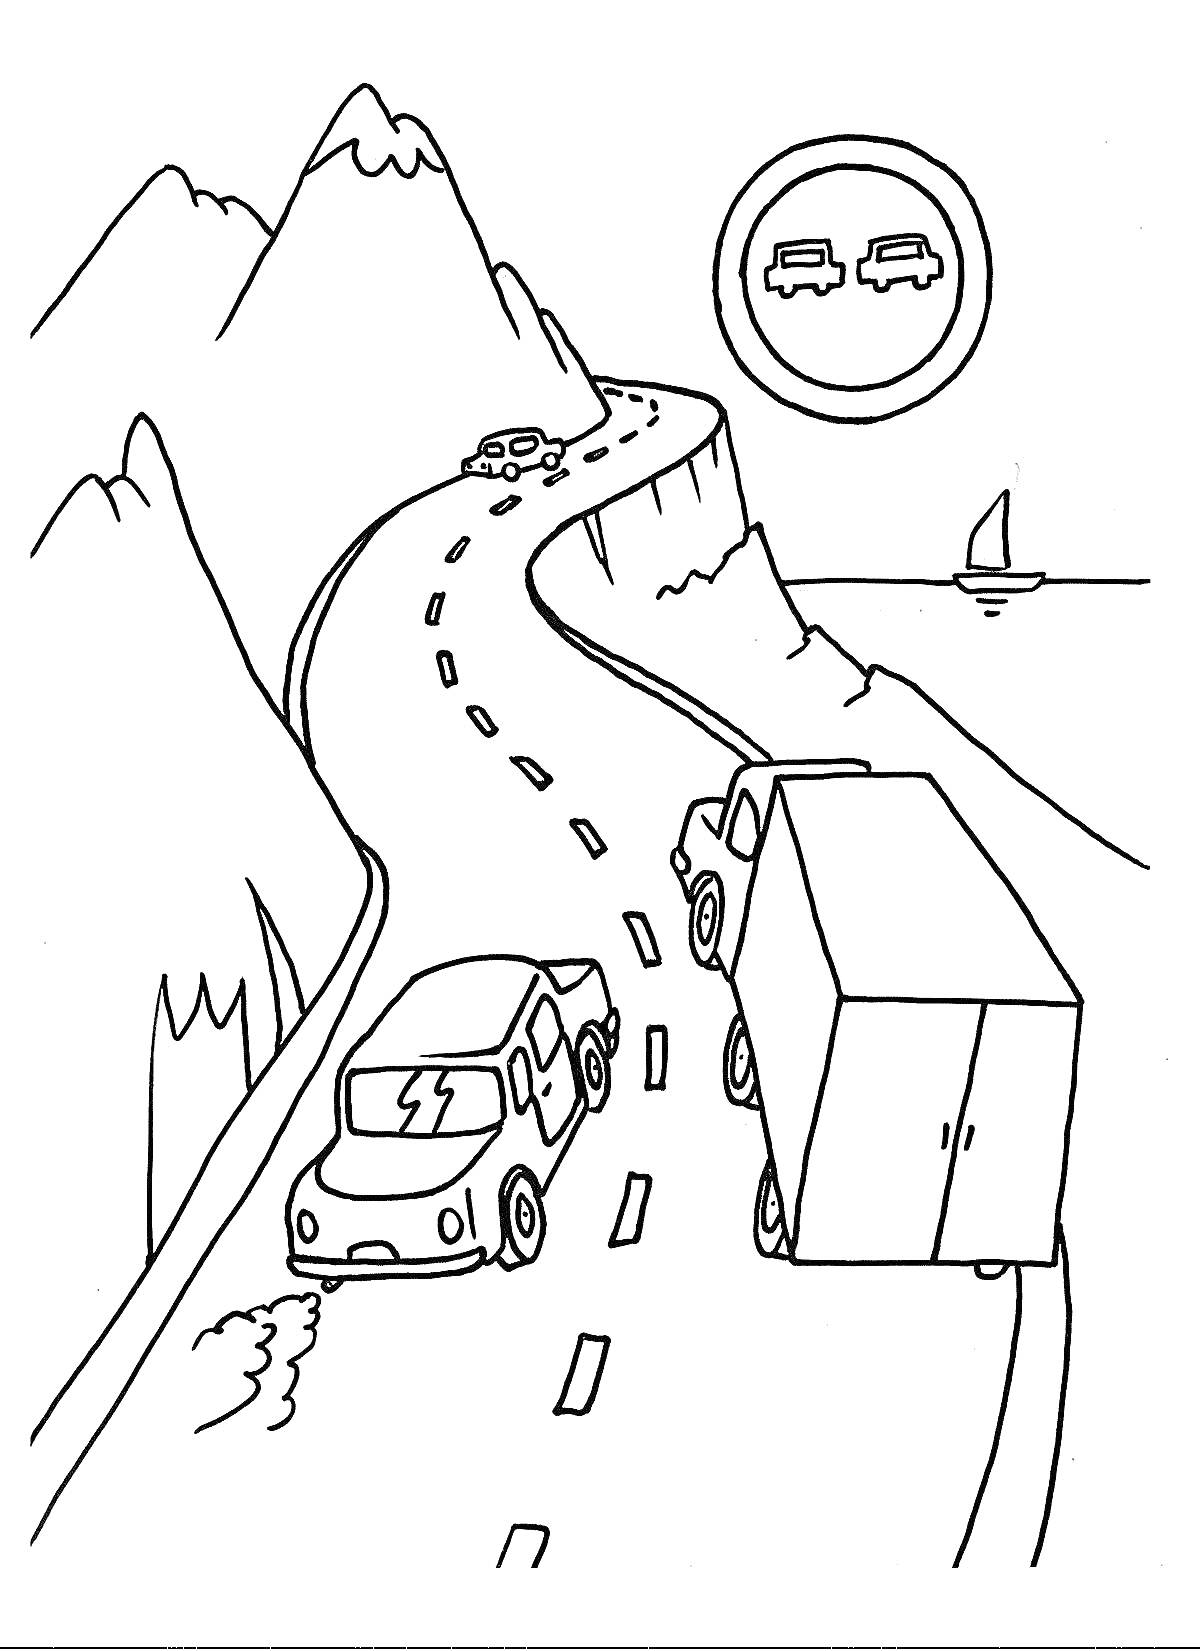 Грузовик и легковой автомобиль на горной дороге с дорожным знаком 